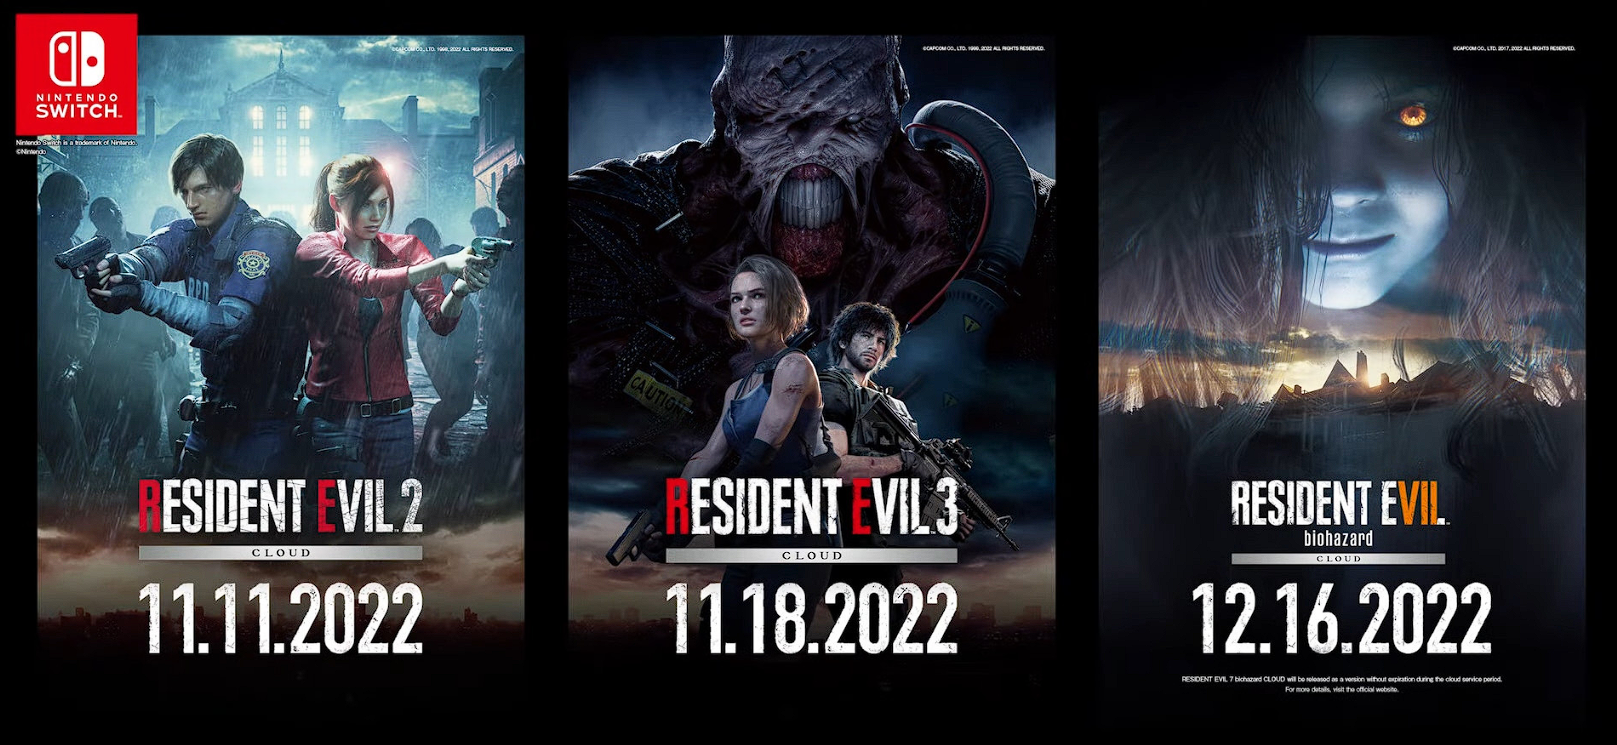 Capcom zapowiedział wydanie remake'ów Resident Evil 2 & 3 na Nintendo Switch w listopadzie, a Resident Evil 7 należy spodziewać się 16 grudnia-2